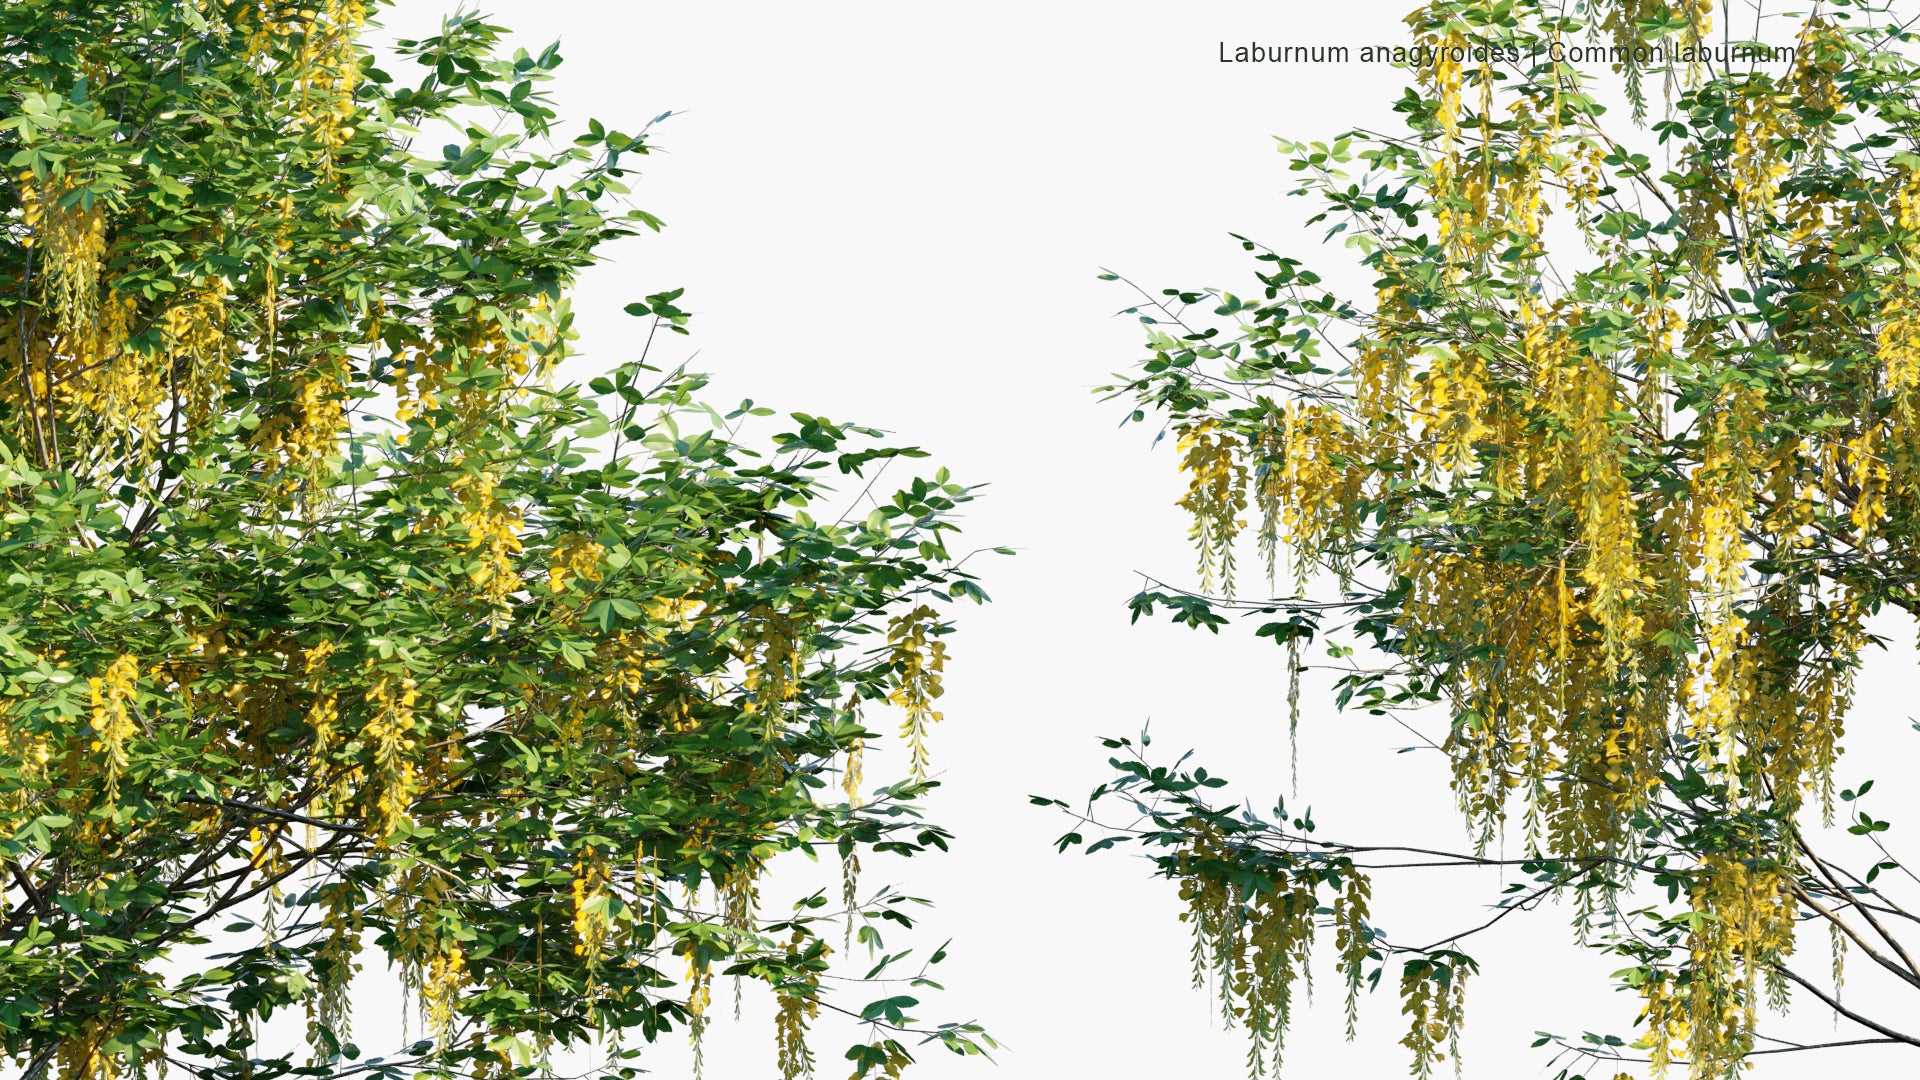 Low Poly Laburnum Anagyroides - Common Laburnum, Golden Chain, Golden Rain (3D Model)